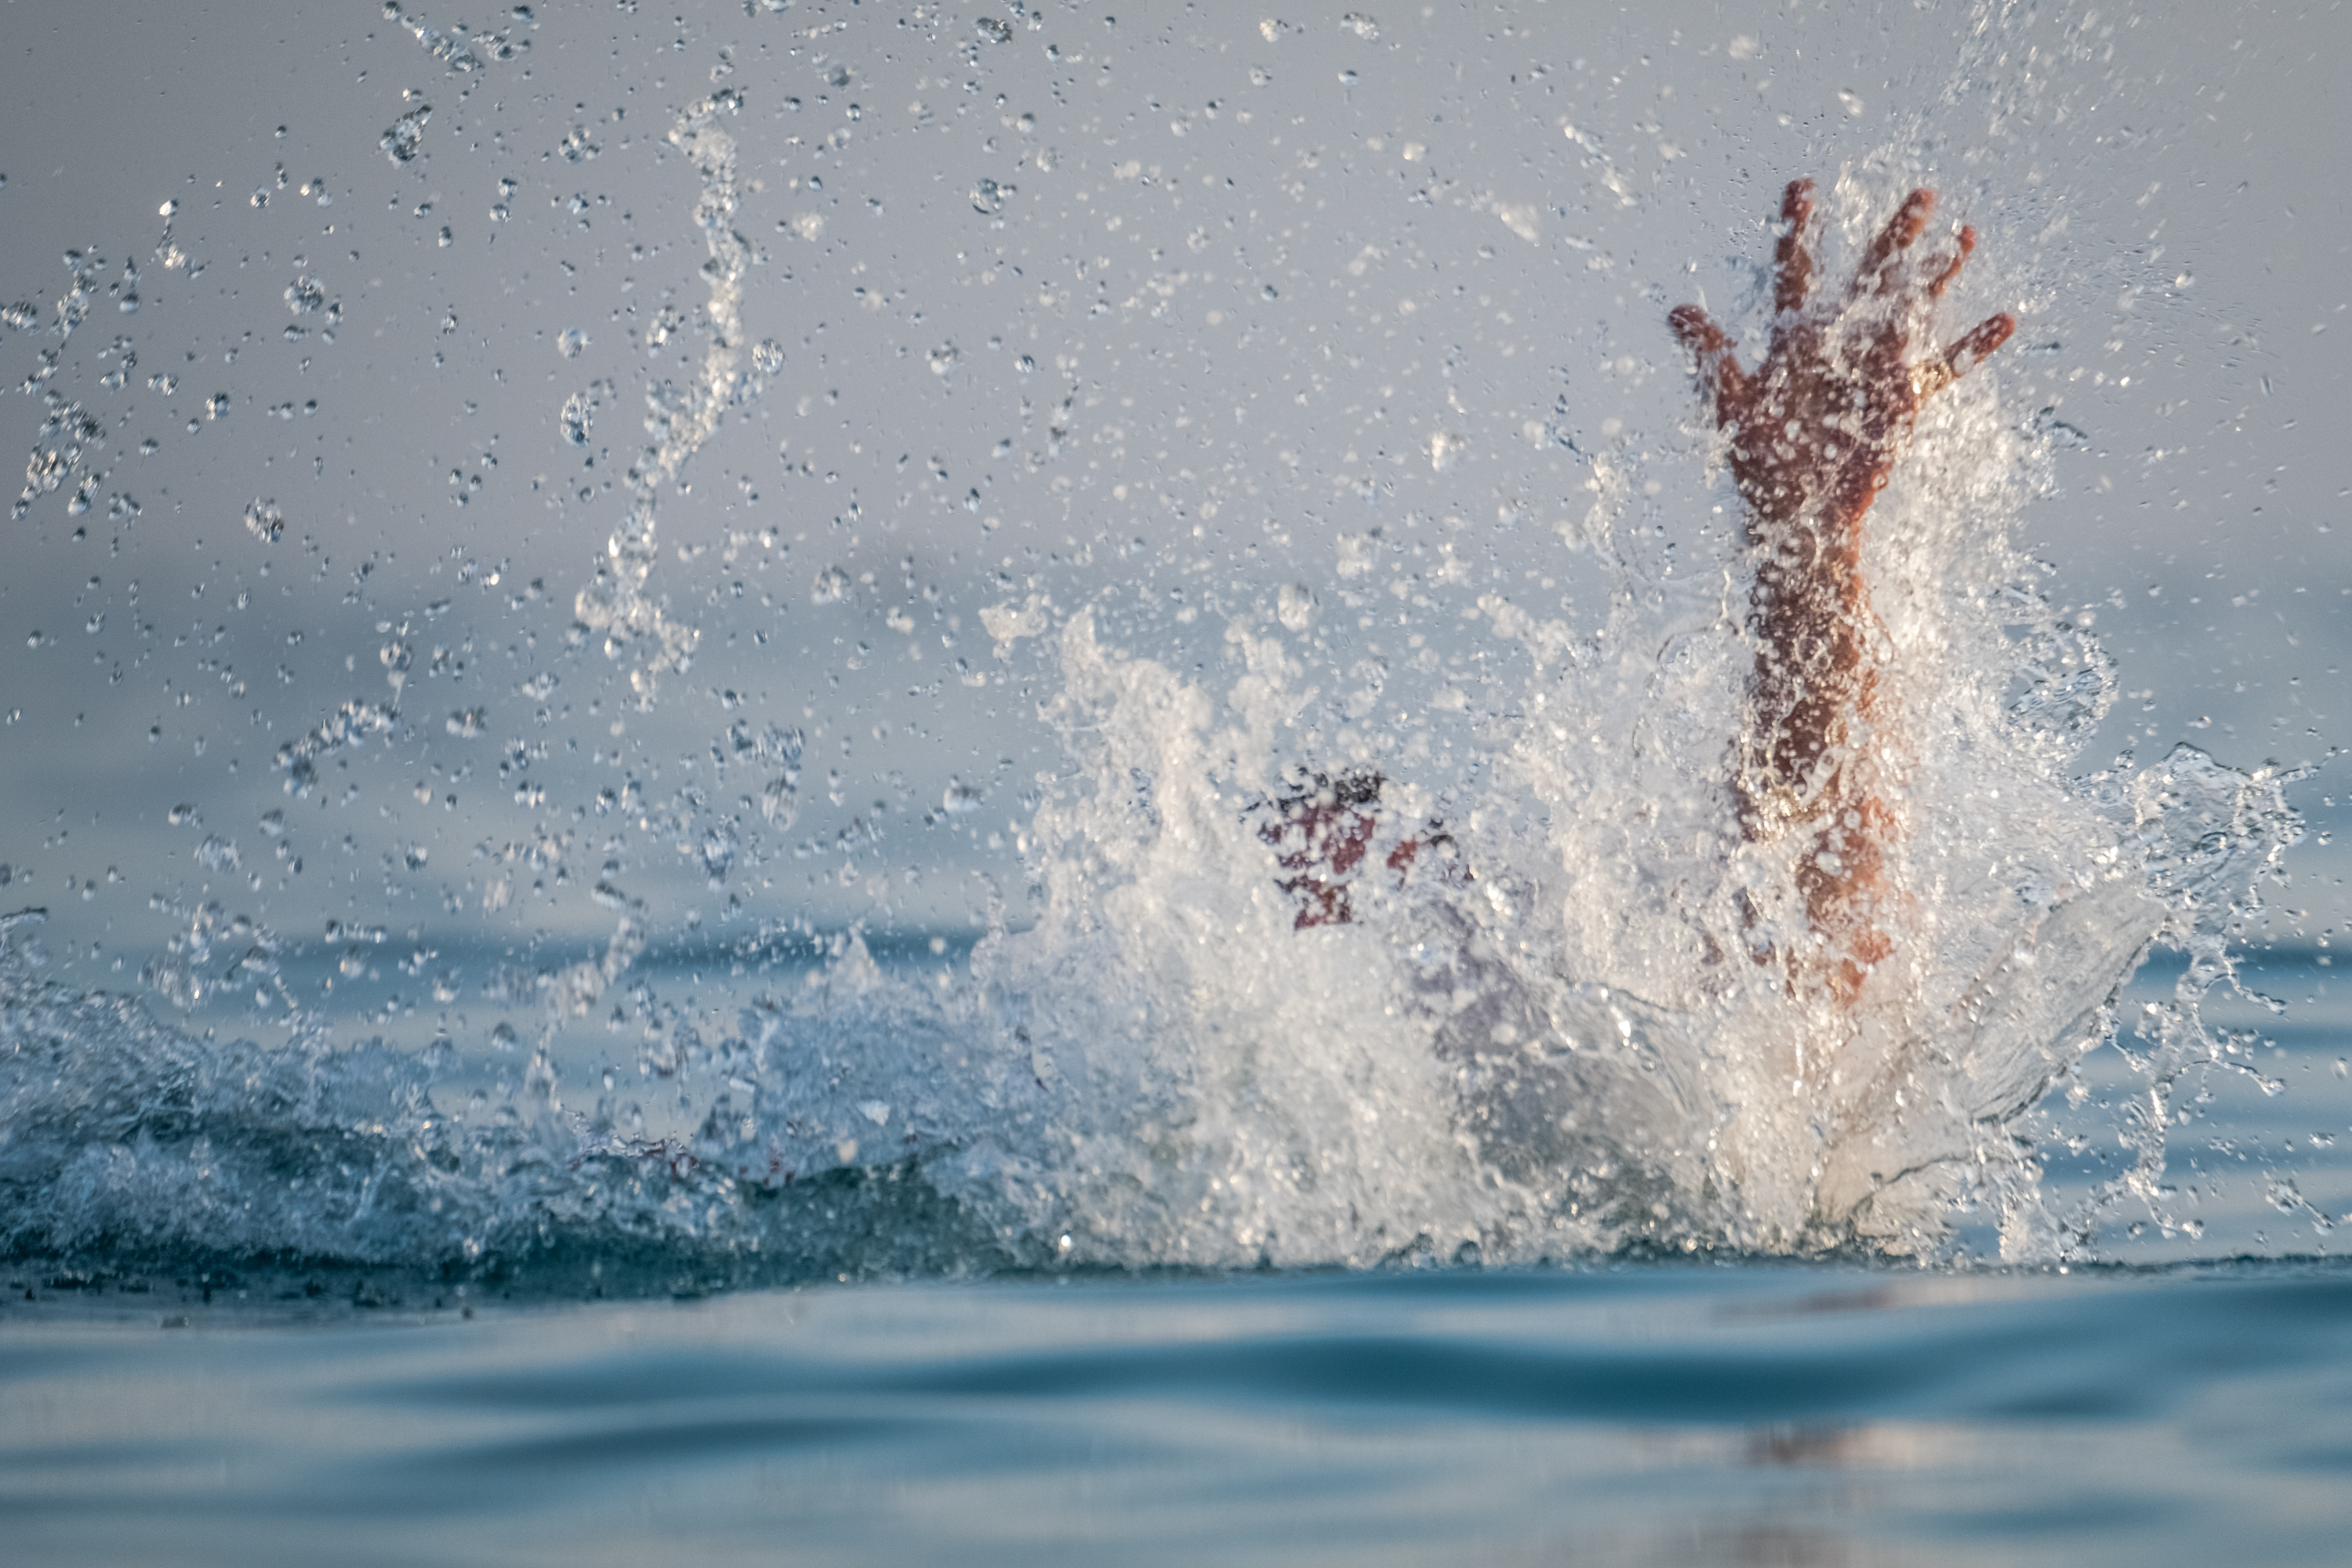 Pessoa pedindo ajuda desde a água | Fonte: Shutterstock